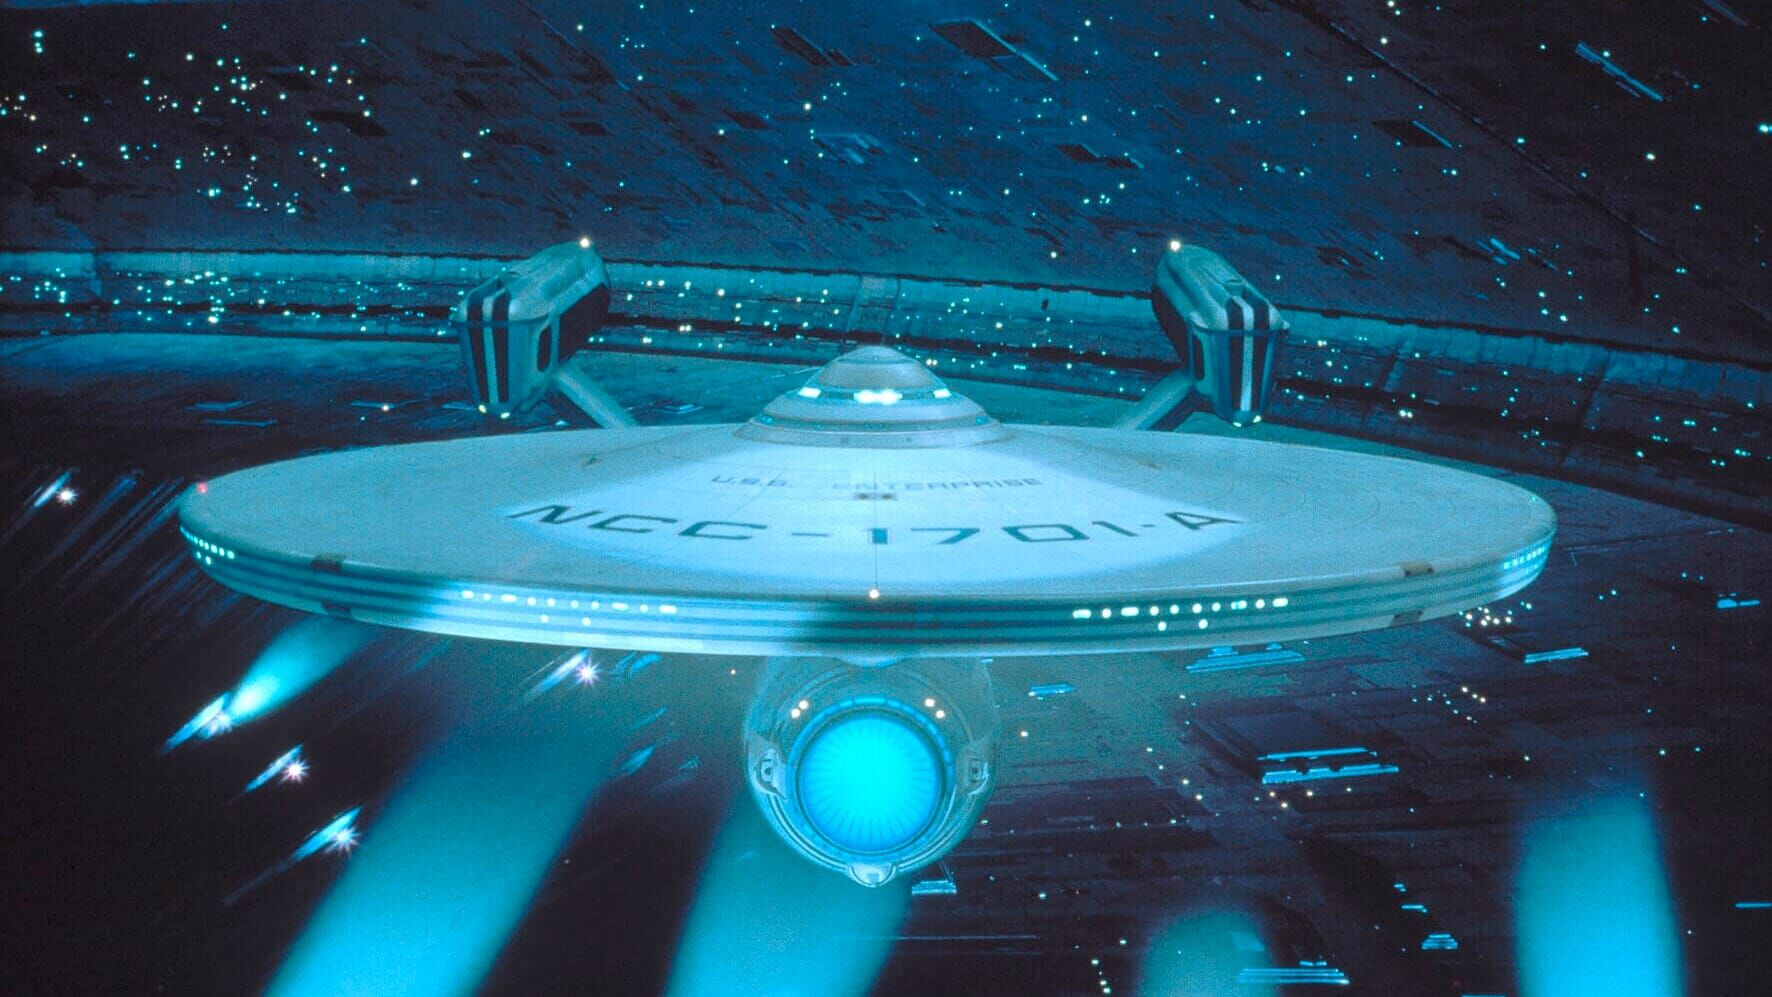 Star Trek IV: Zurück in die Gegenwart